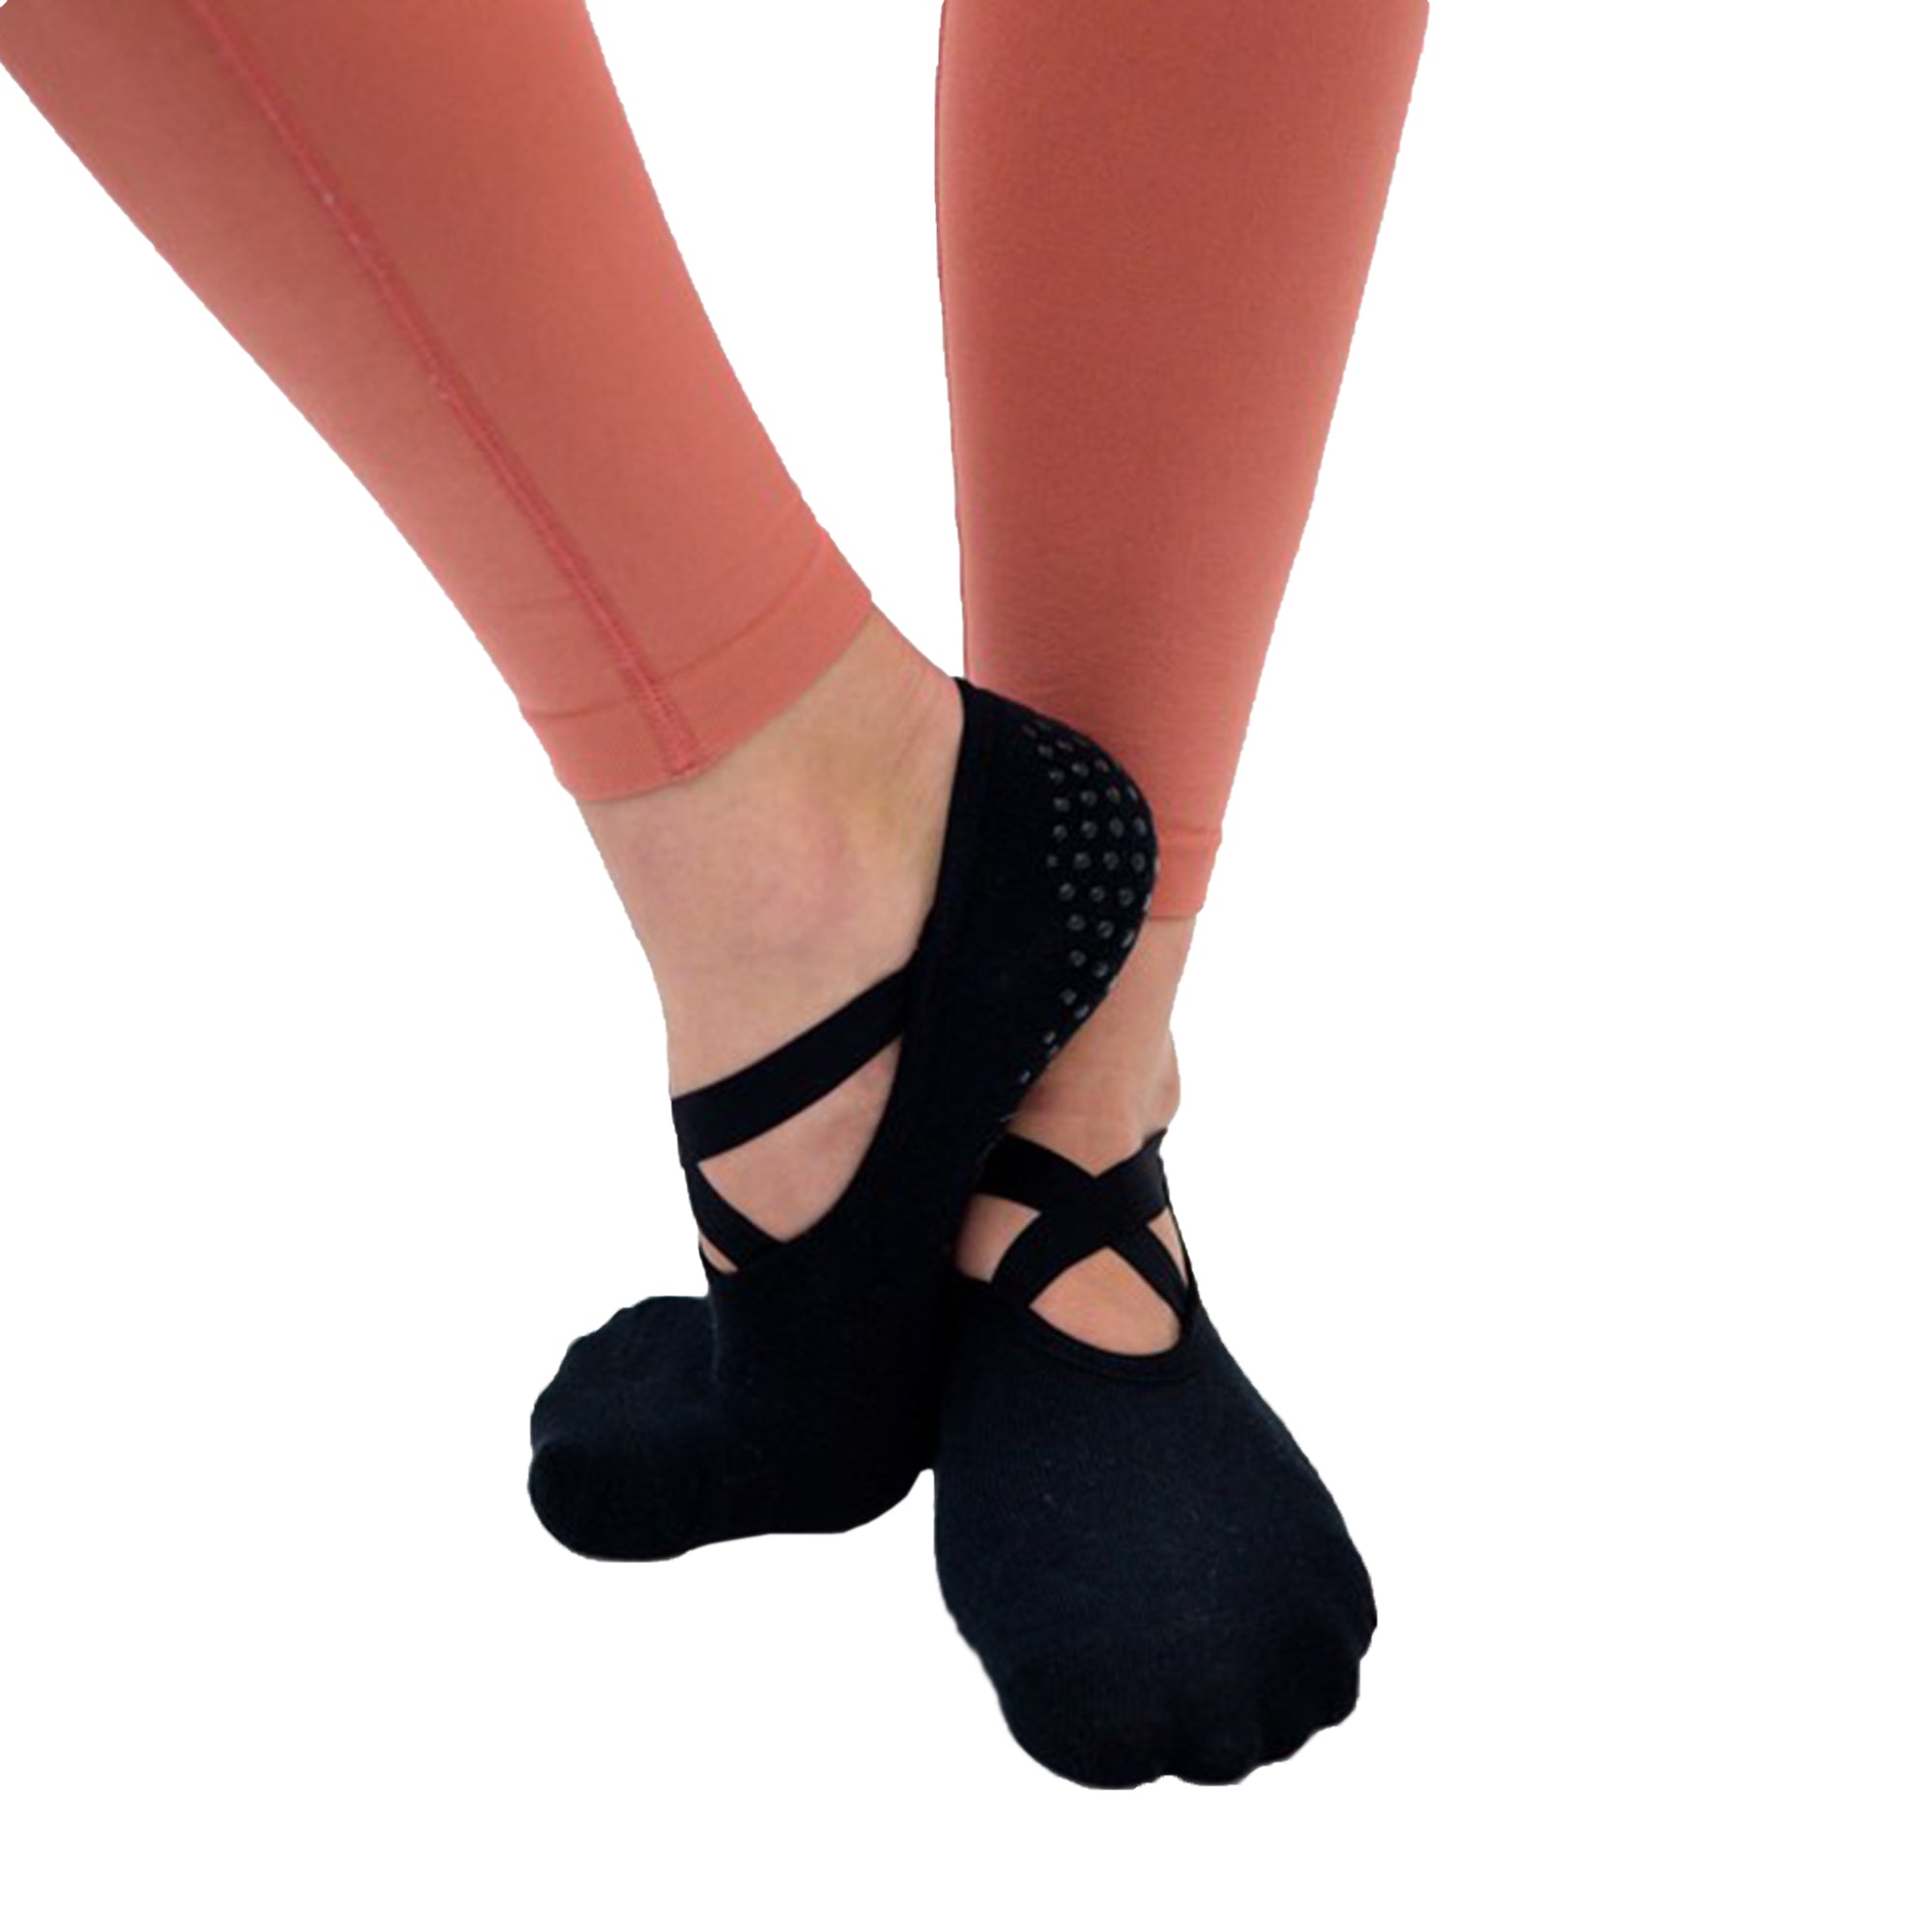 Buy Yoga Socks Non Slip Skid Socks with Grips Pilates Ballet Barre Socks  for Women, 4 Pairs-black, Small-Medium at